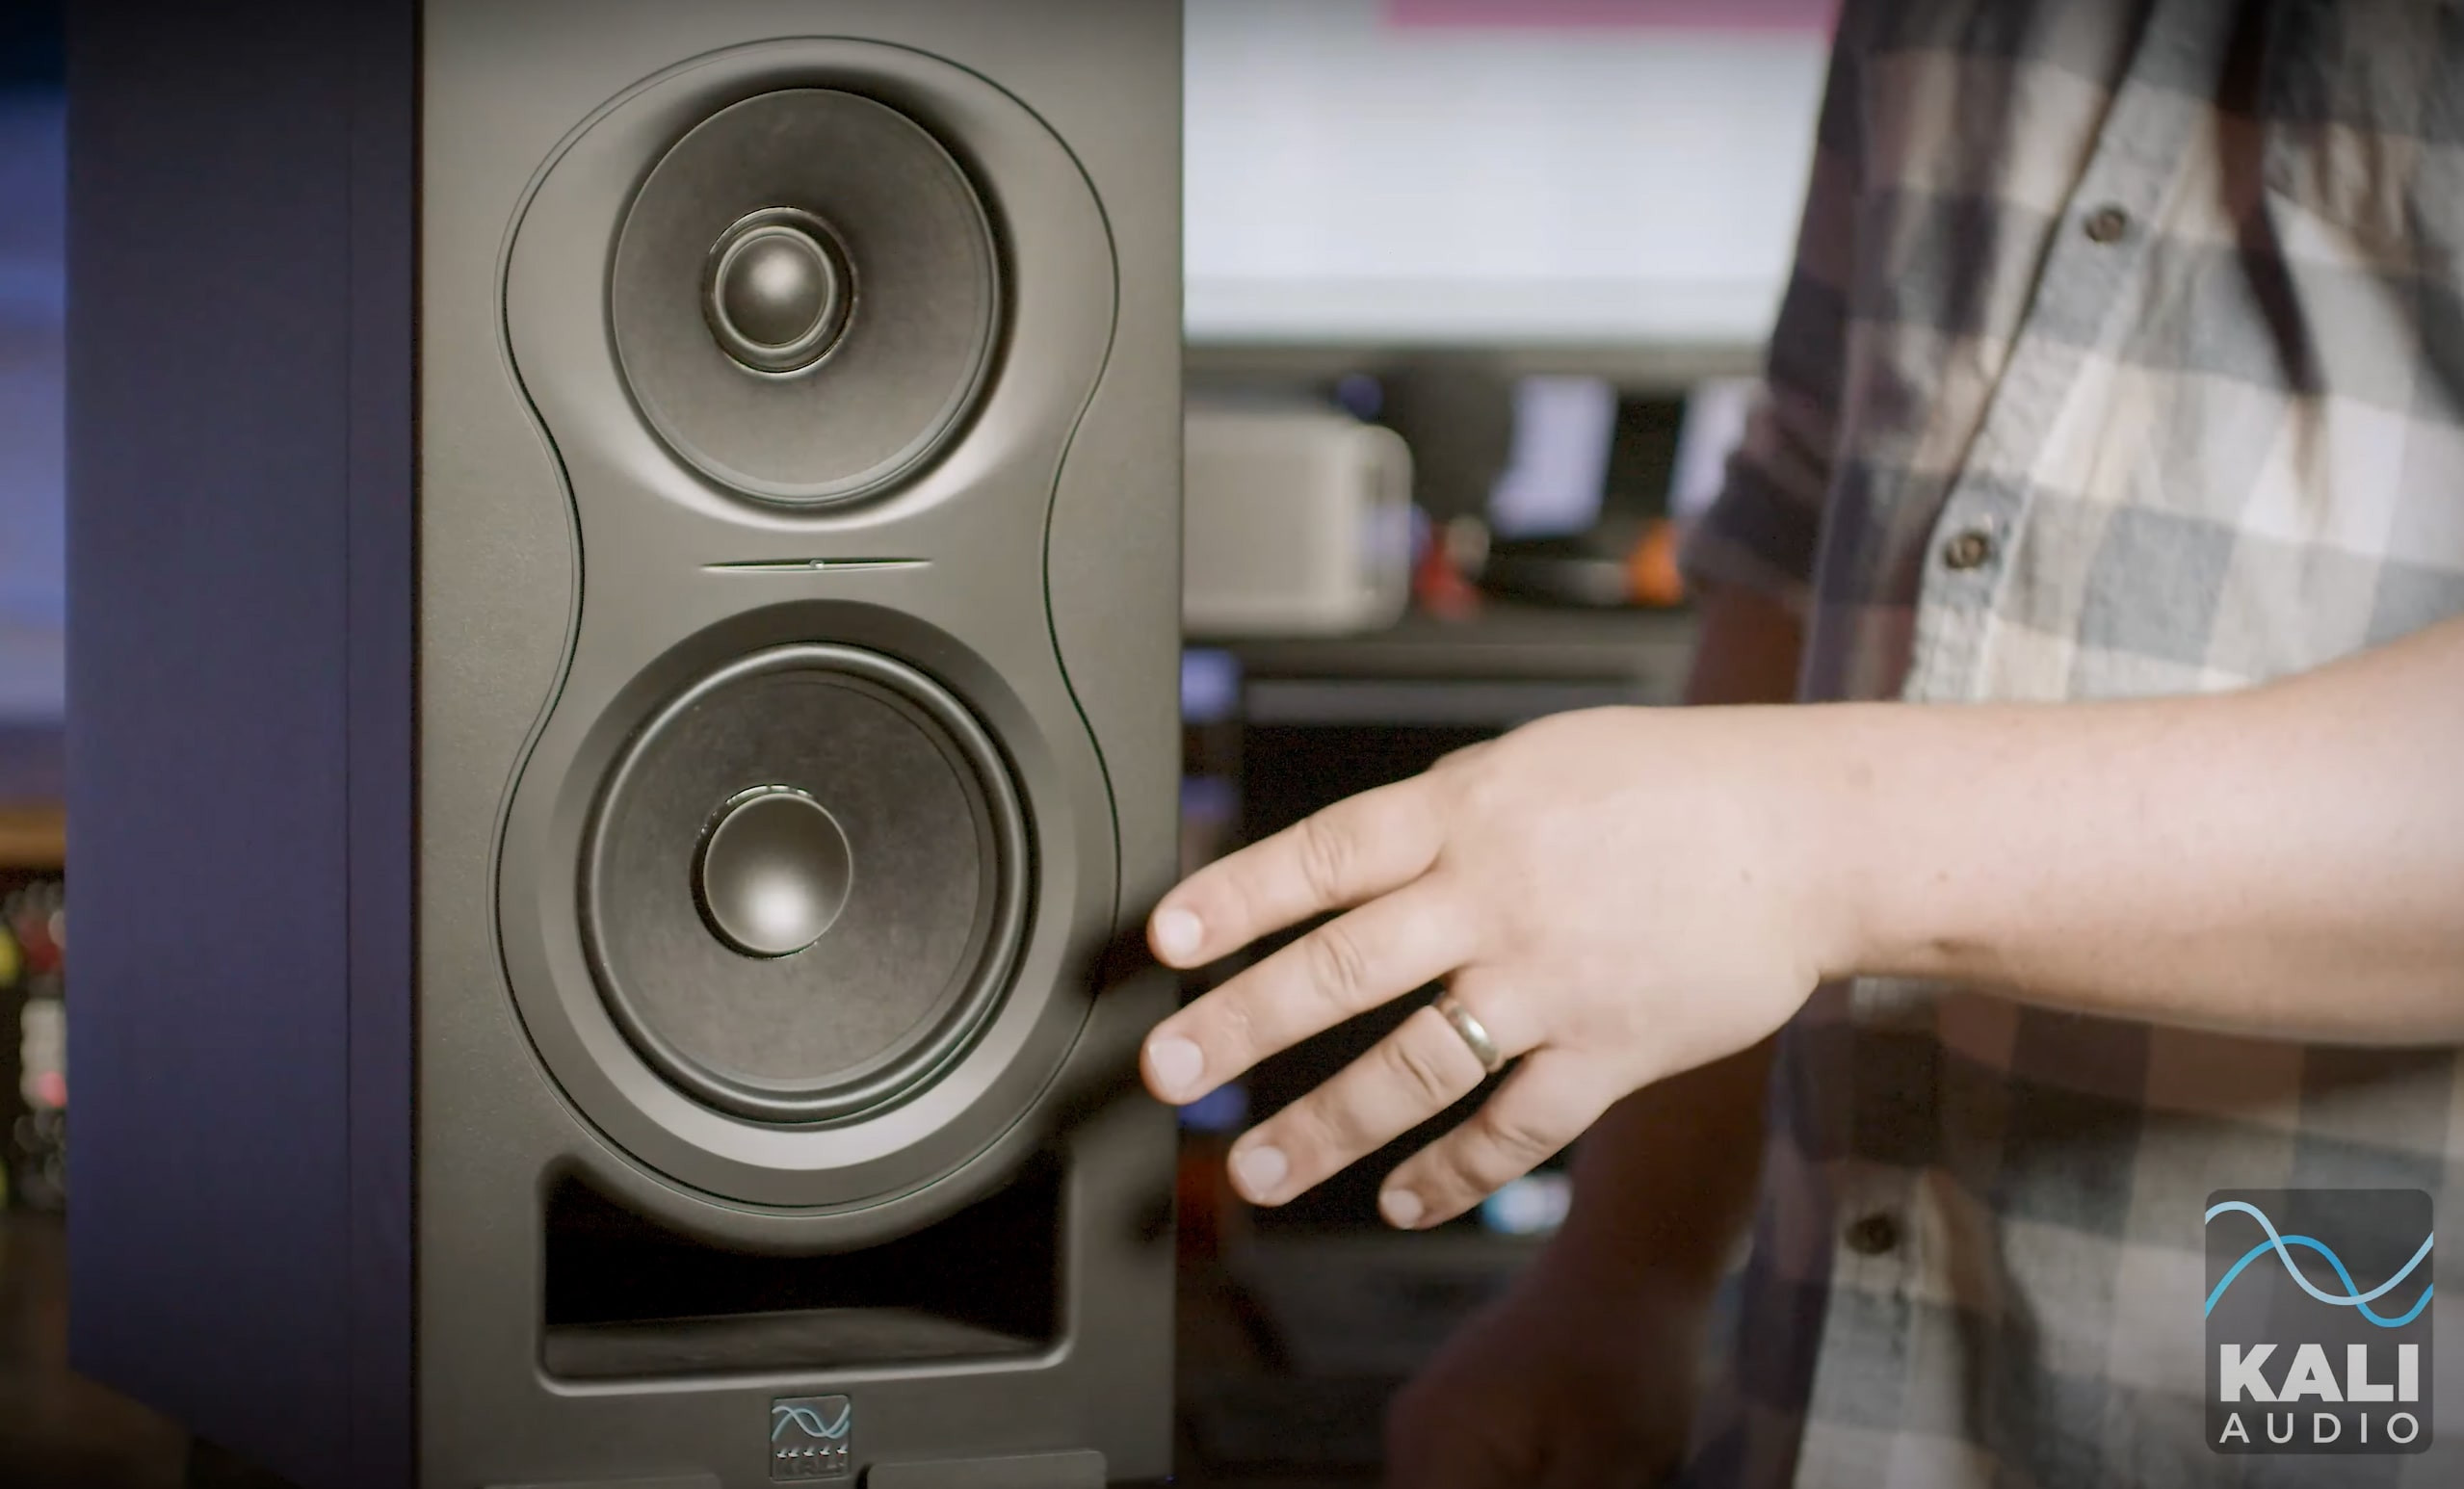 PREMIERA: Kali Audio IN-5 - nowe monitory studyjne!